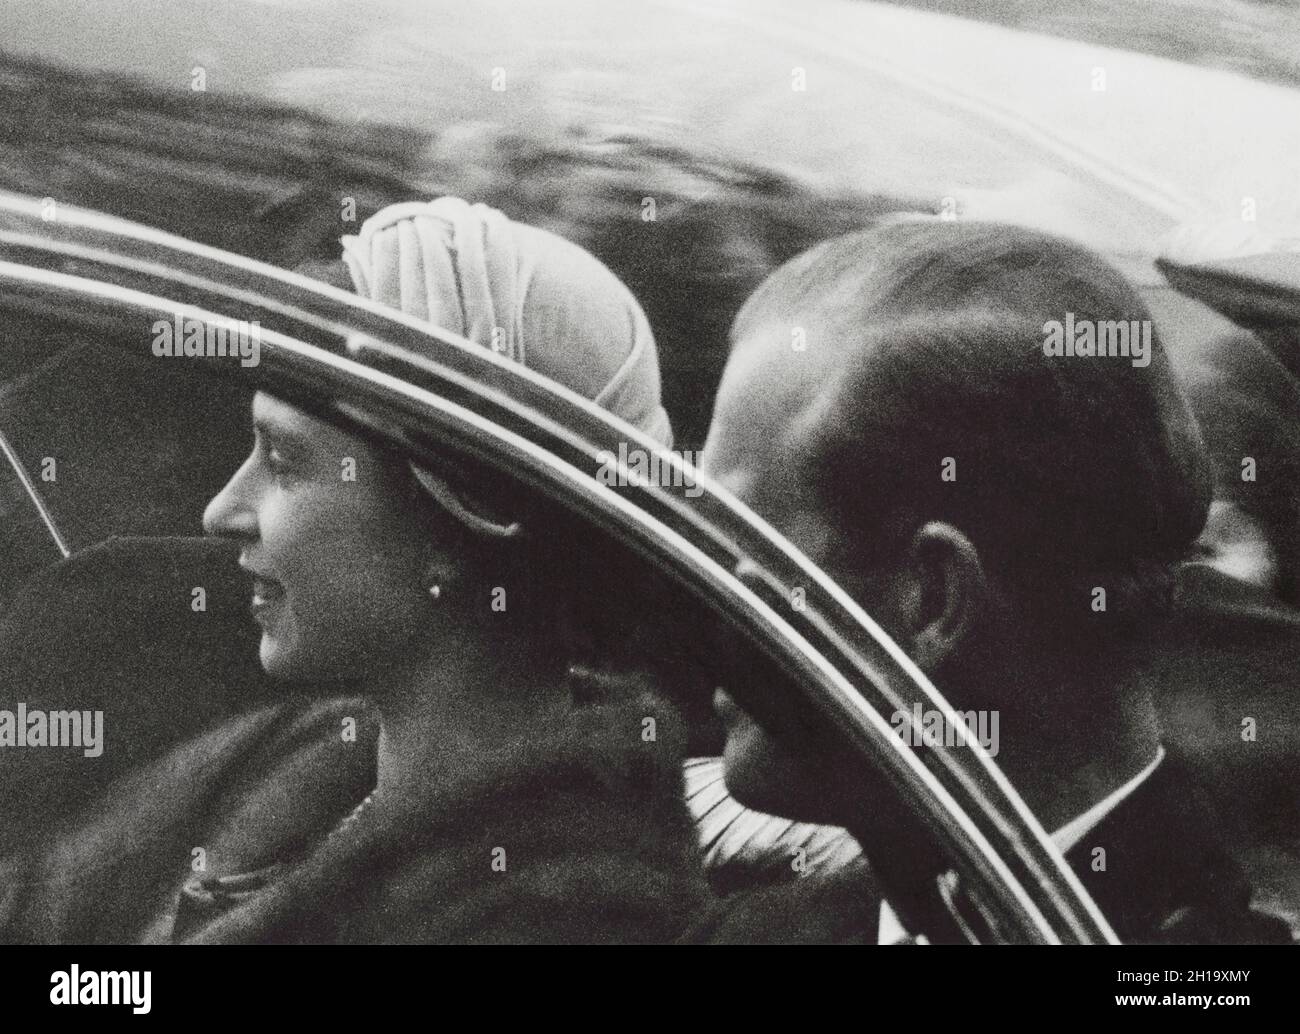 Elisabetta II, Regina di Gran Bretagna, Principe Filippo, Duca di Edimburgo, ritratto di testa e spalle in automobile durante l'apparizione pubblica, New York, USA, Angelo Rizzuto, ottobre 1957 Foto Stock